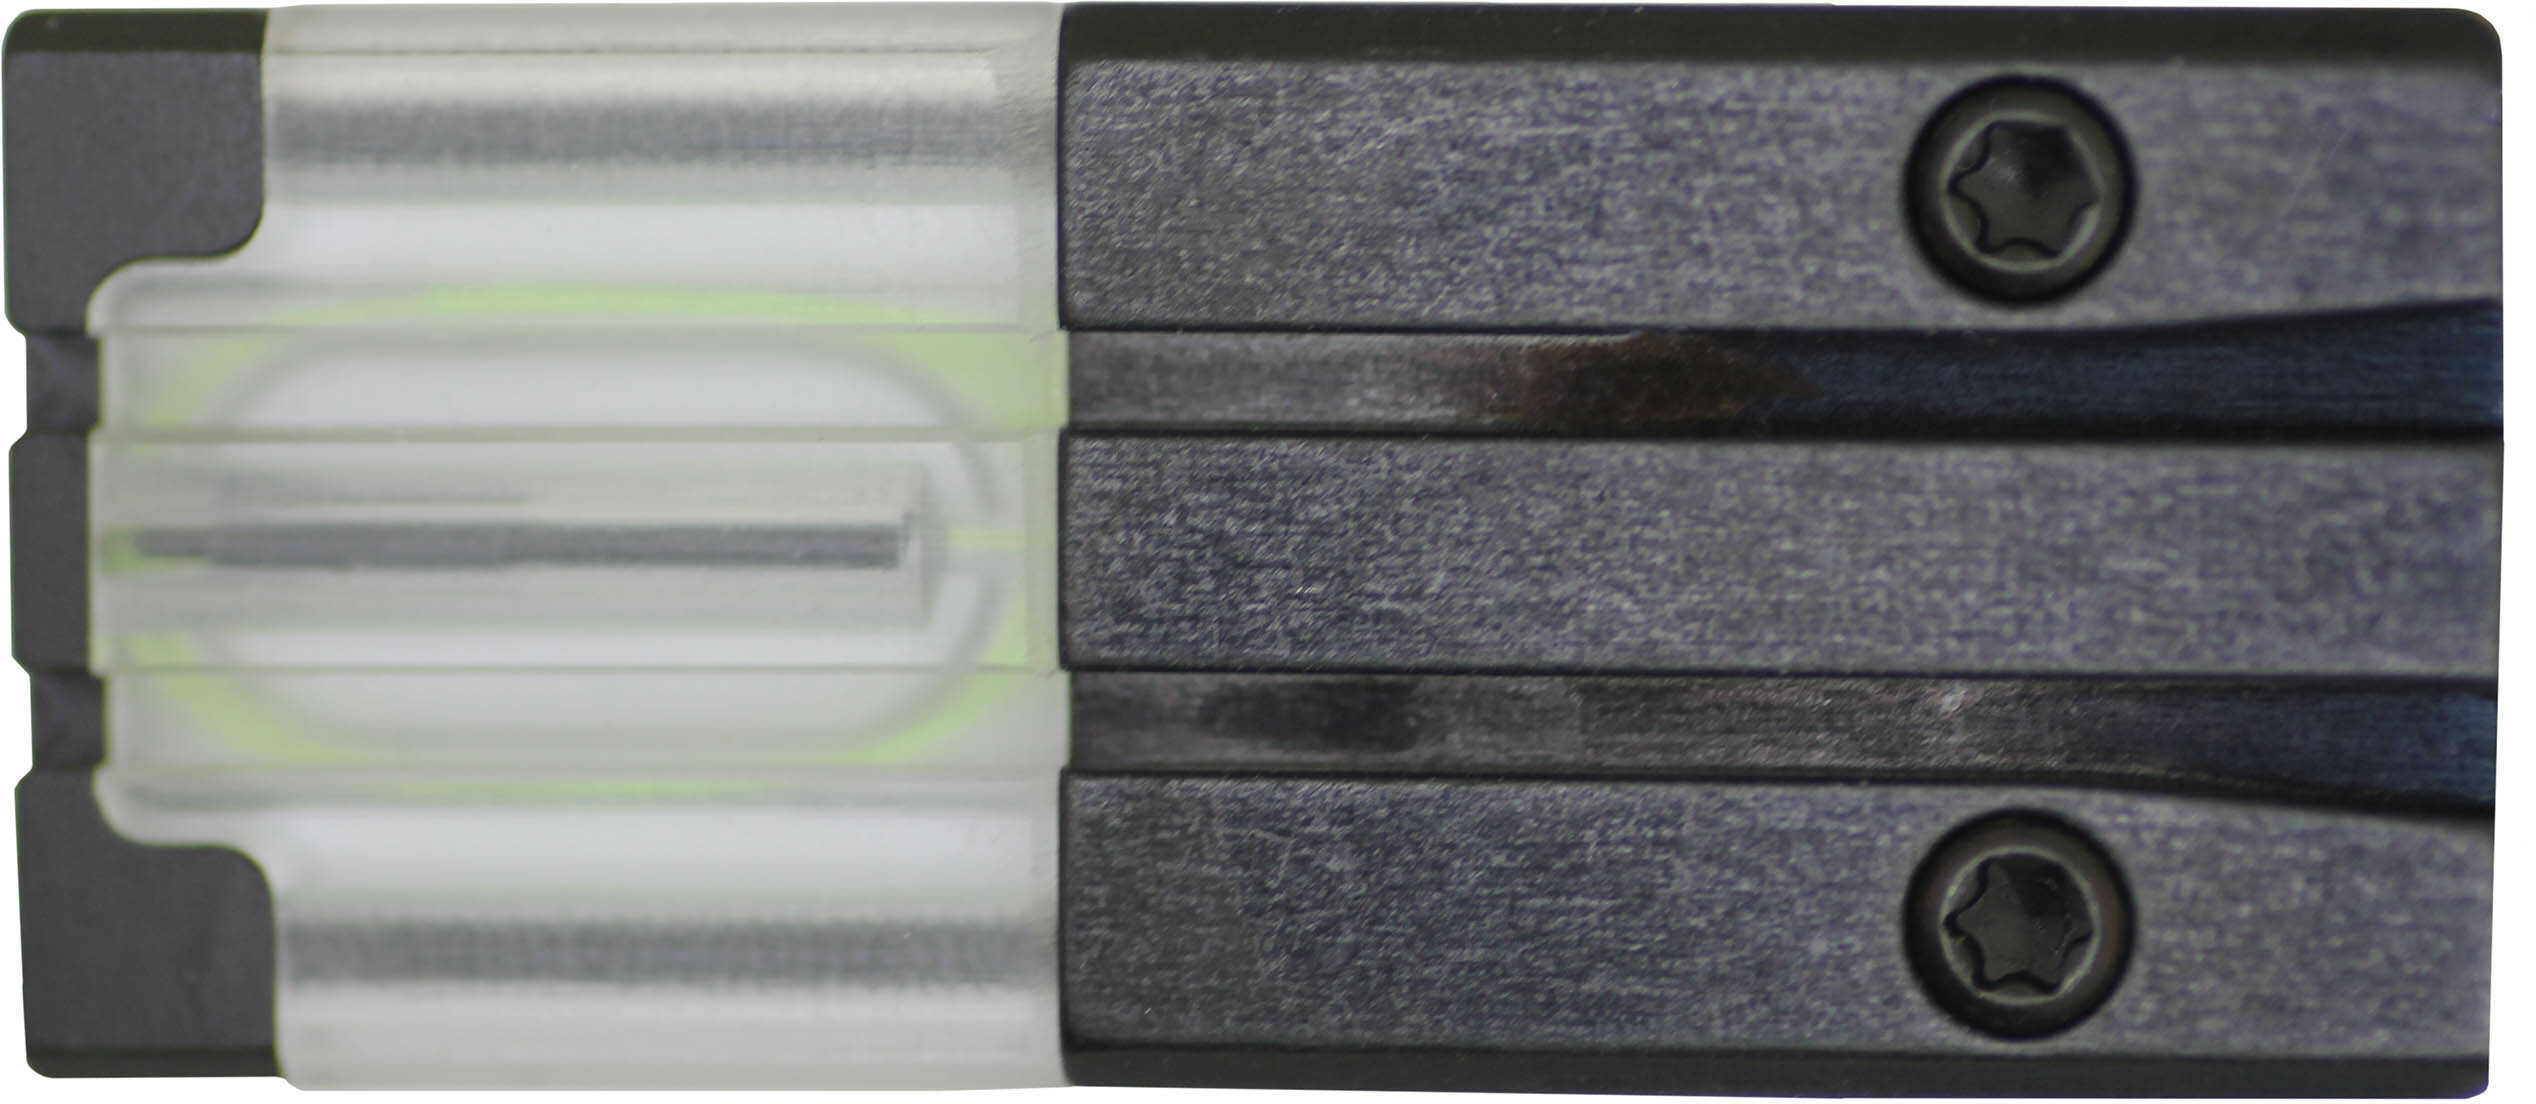 Meprolight FT Bullseye-Dot Rear Sight-Green - for Glock